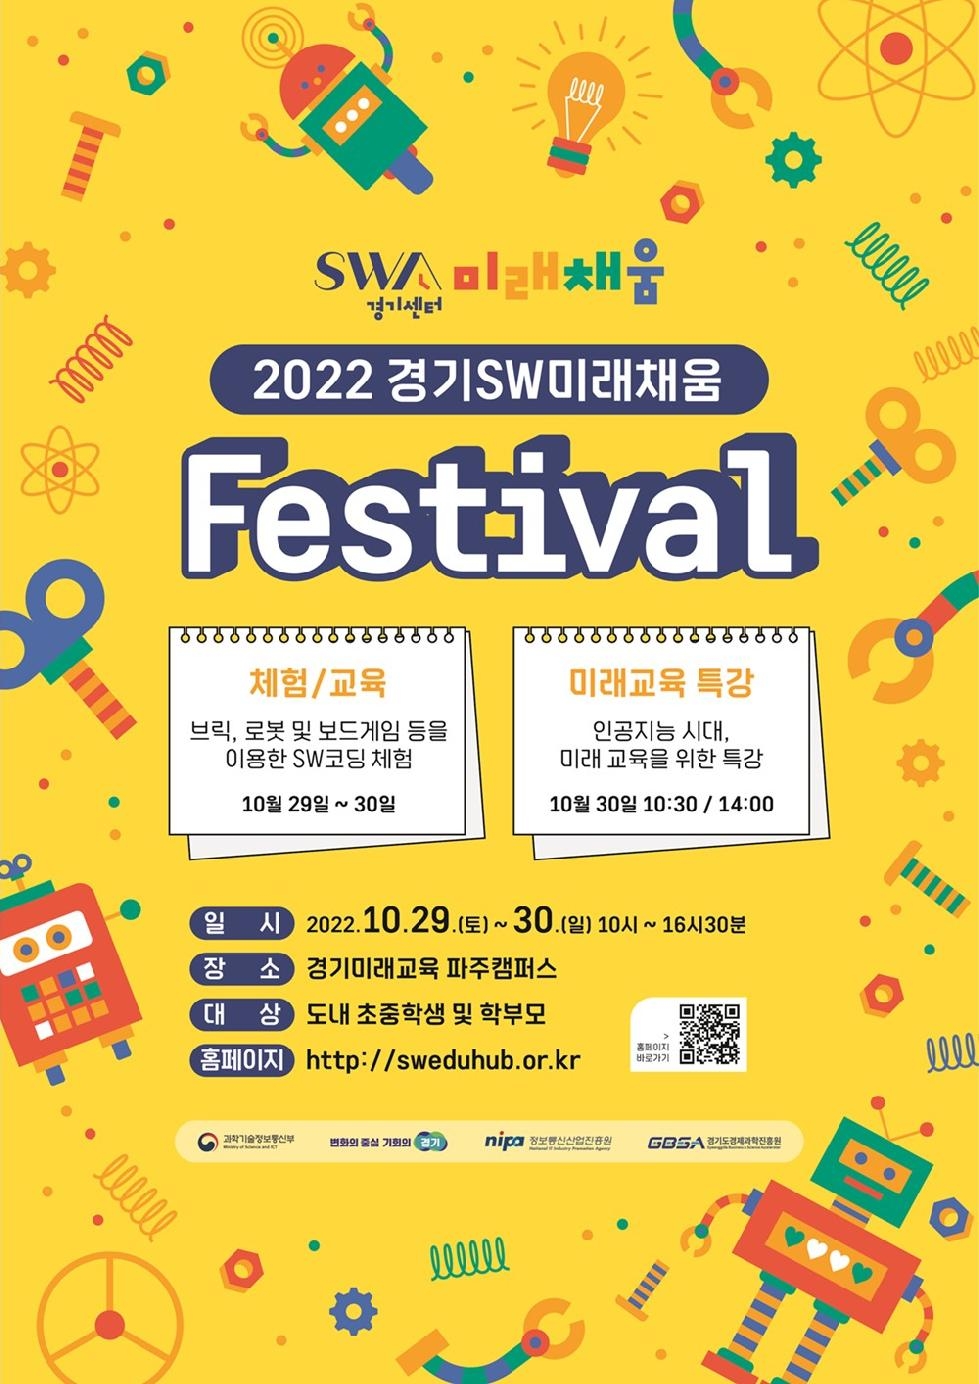 경기도, 29~30일 경기소프트웨어(SW)미래채움 페스티벌 개최. 소프트